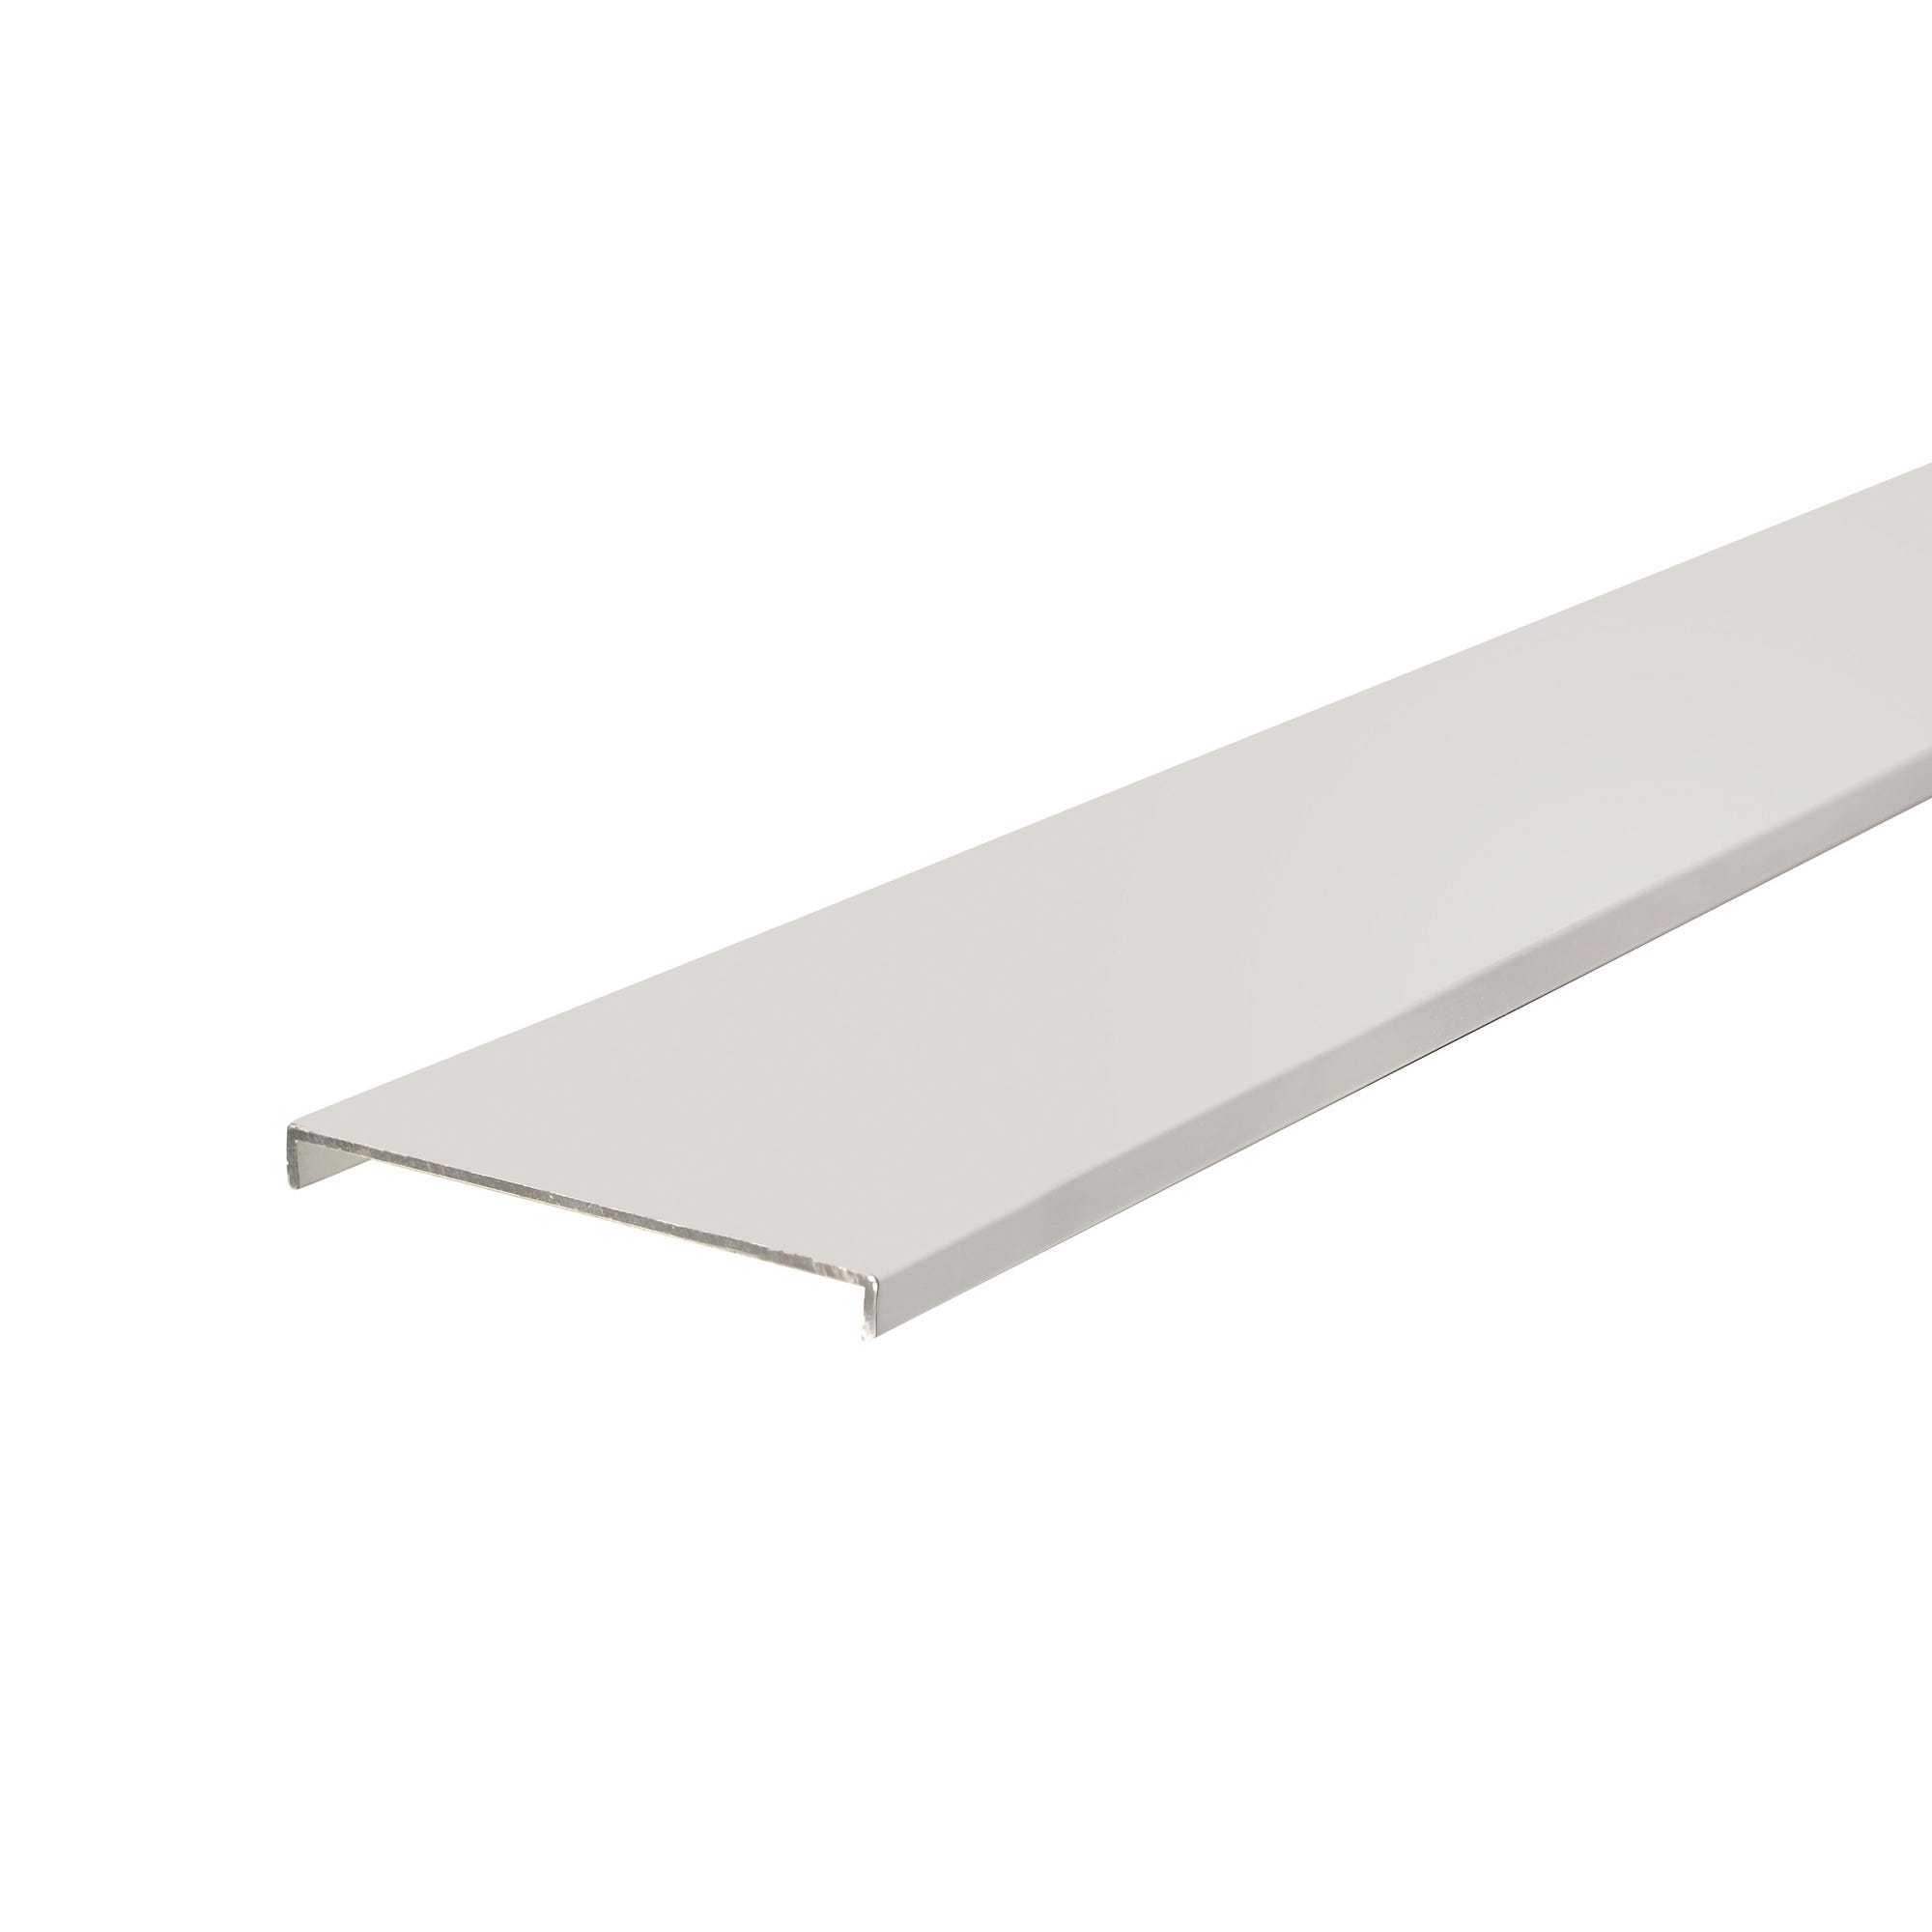 Nez de cloison aluminium blanc 104 mm Long.2,60 m 0